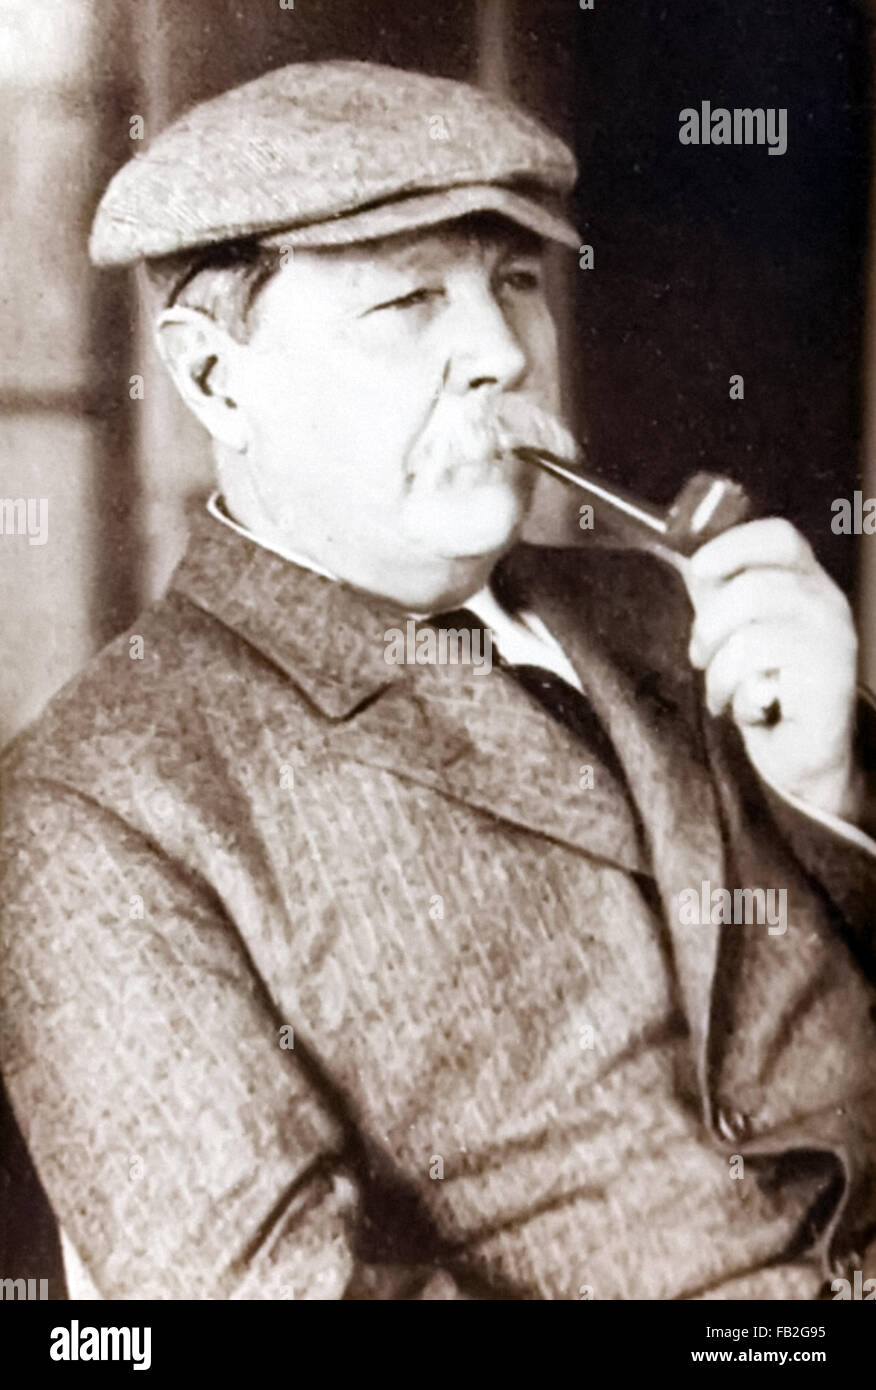 Sir Arthur Conan Doyle (1859-1930), britischer Schriftsteller und Schöpfer der fiktive Detektiv Sherlock Holmes fotografiert ca. 1920 raucht eine Pfeife. Foto von Originalfoto in Privatbesitz. Stockfoto